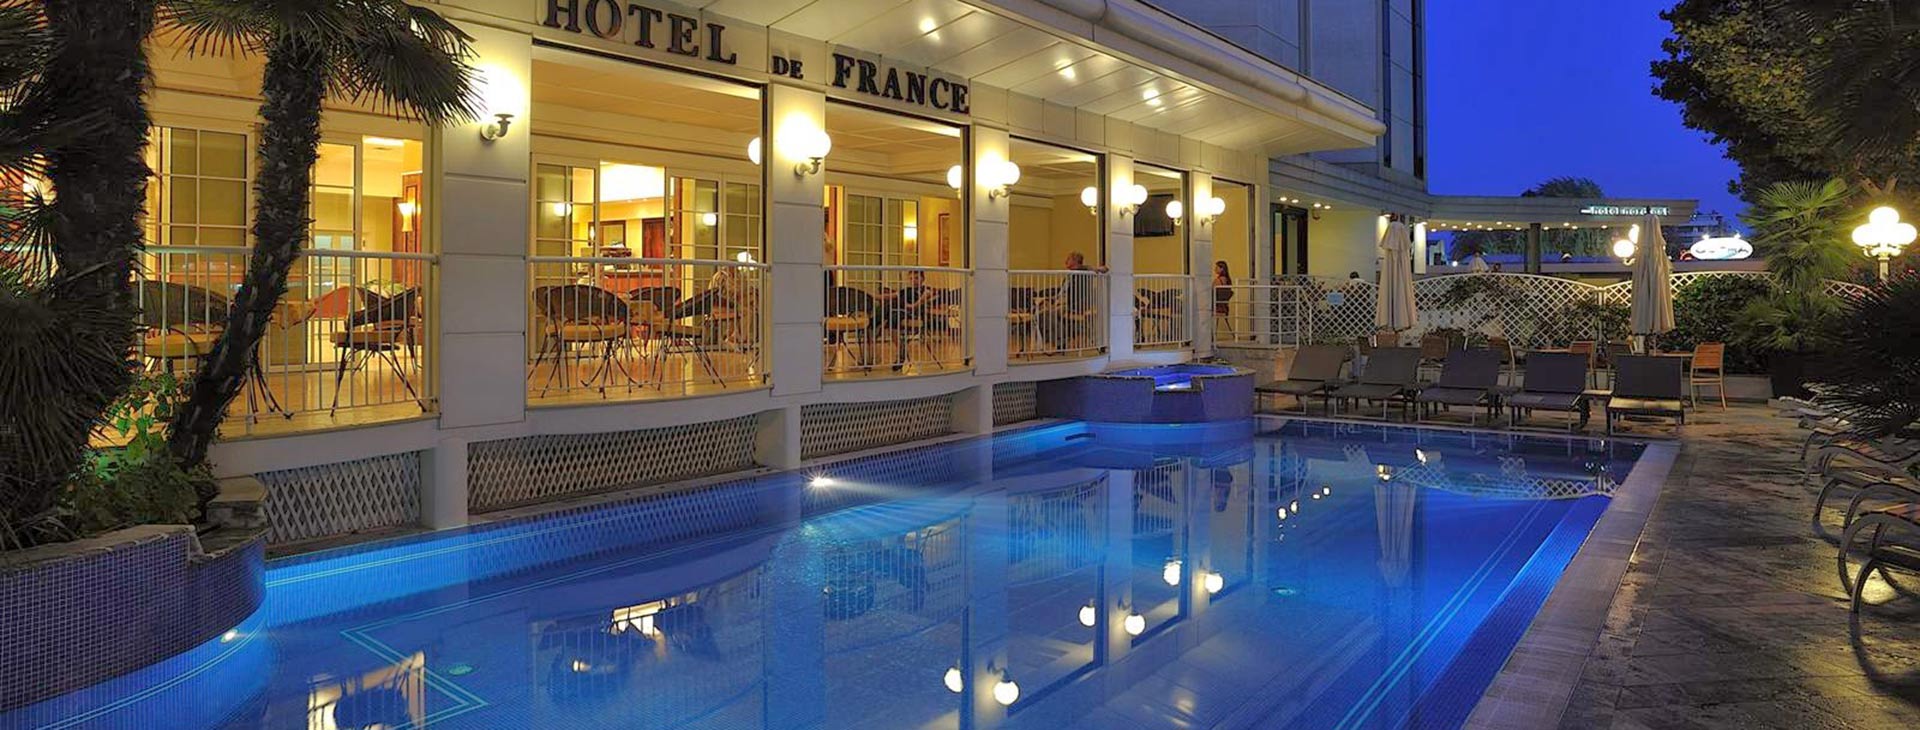 De France Hotel  Obrázok1